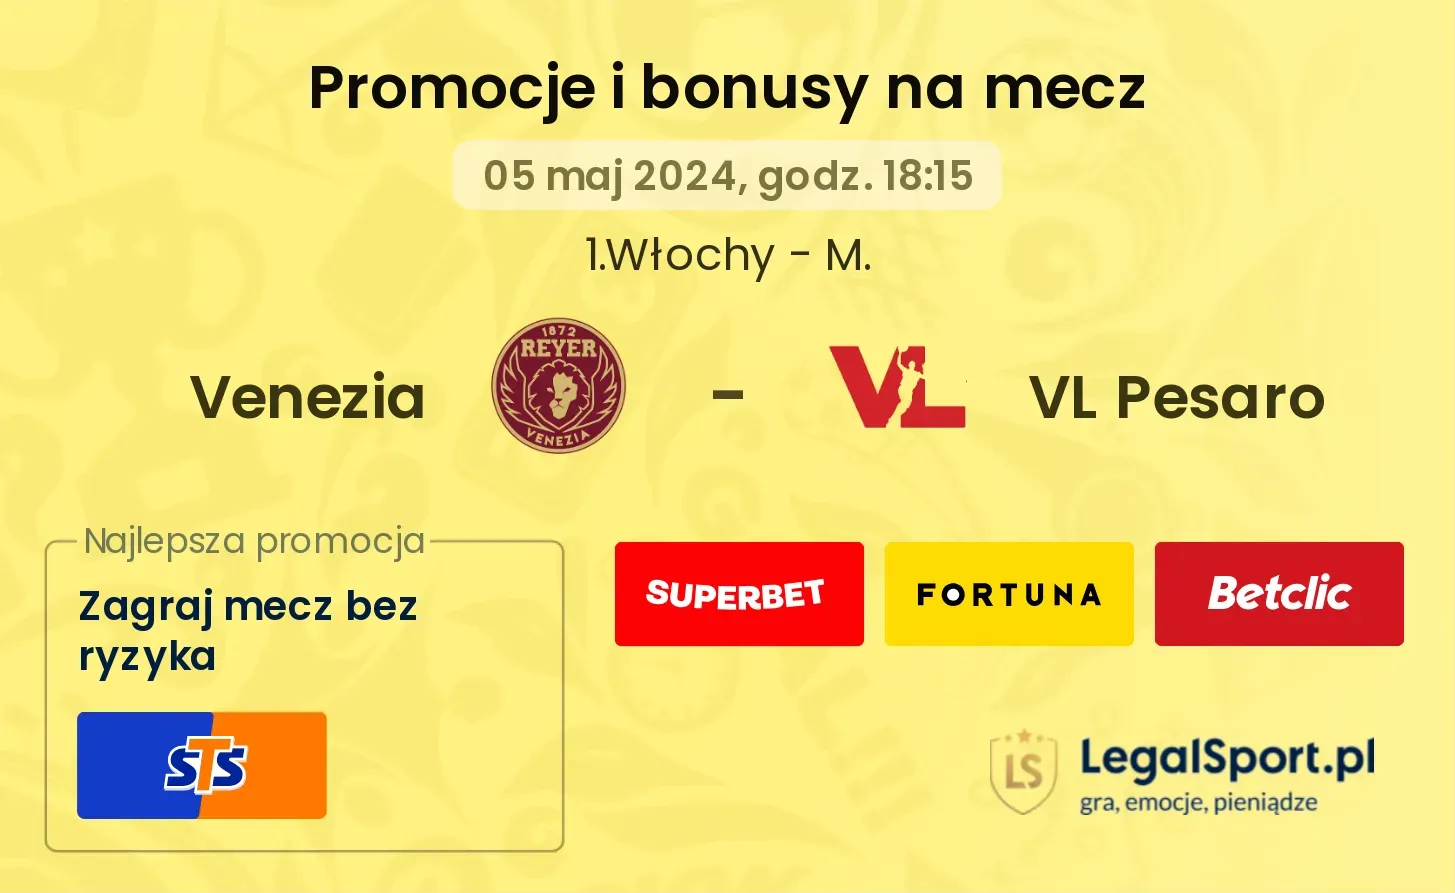 Venezia - VL Pesaro promocje bonusy na mecz